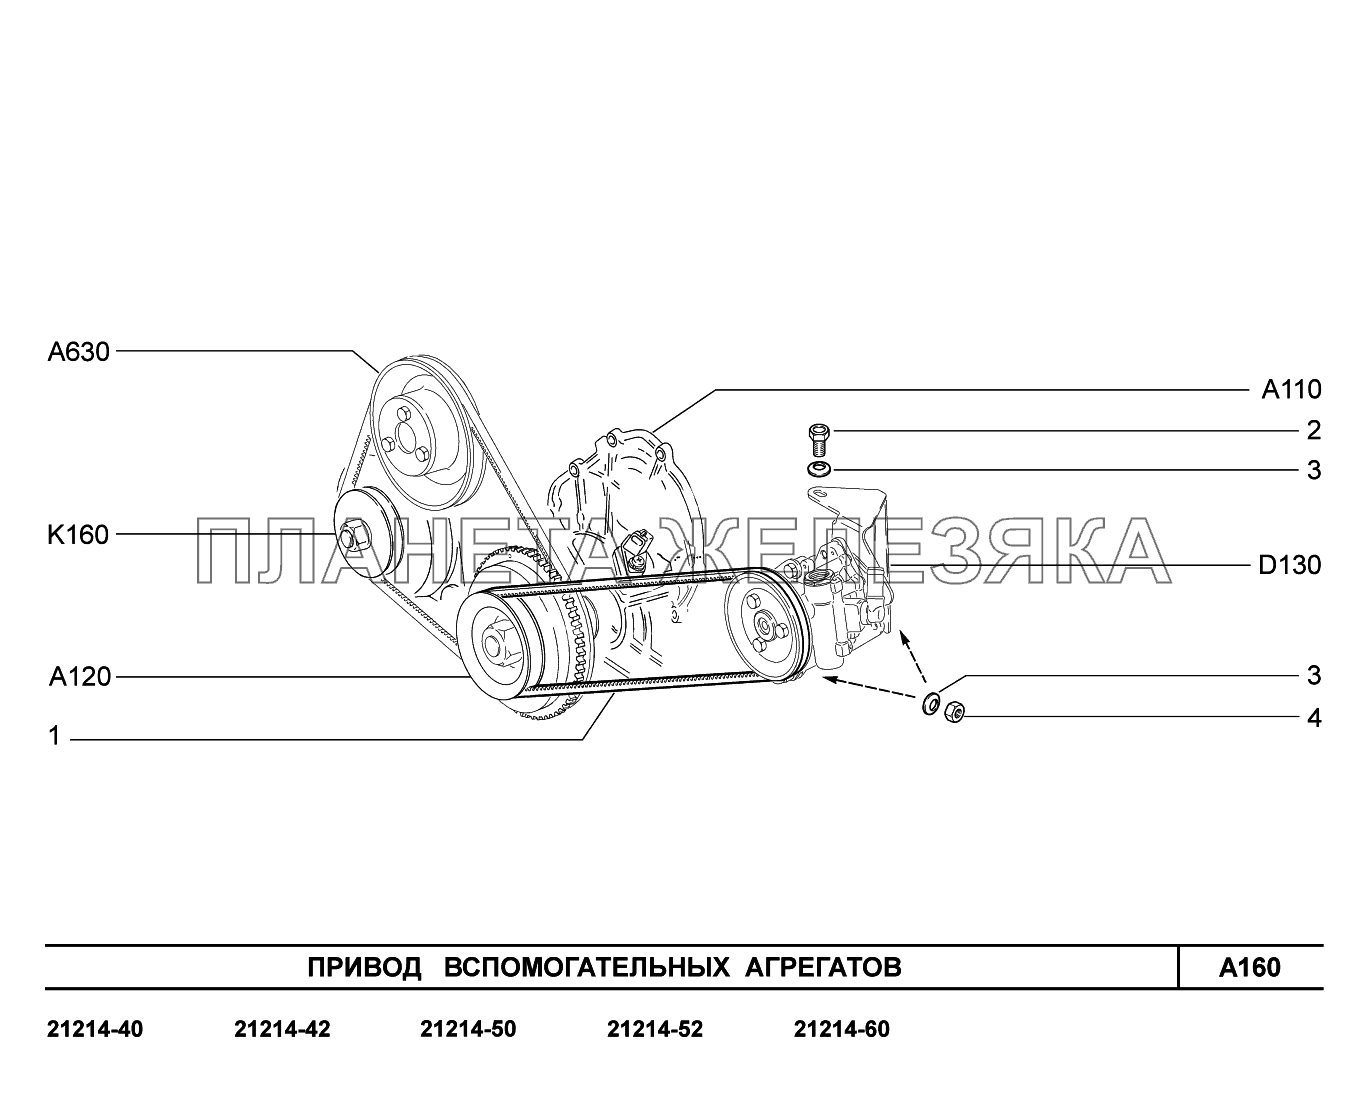 A160. Привод вспомогательных агрегатов Lada 4x4 Urban